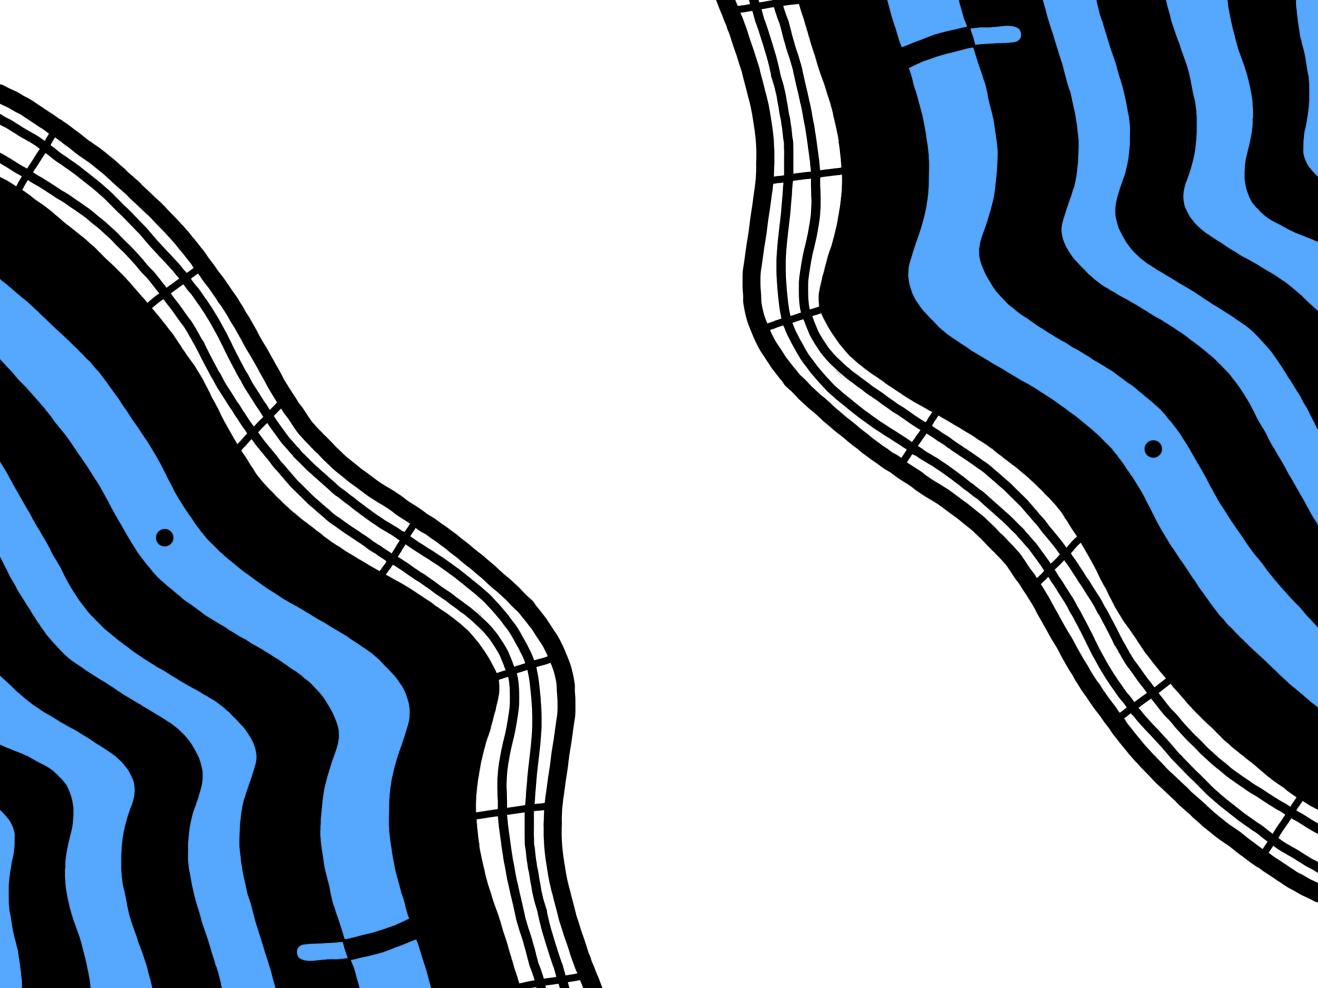 FOYERFUNK Logo in blau: Zwei Gesichter, die der Form des Foyers nachempfunden sind, schauen sich an.